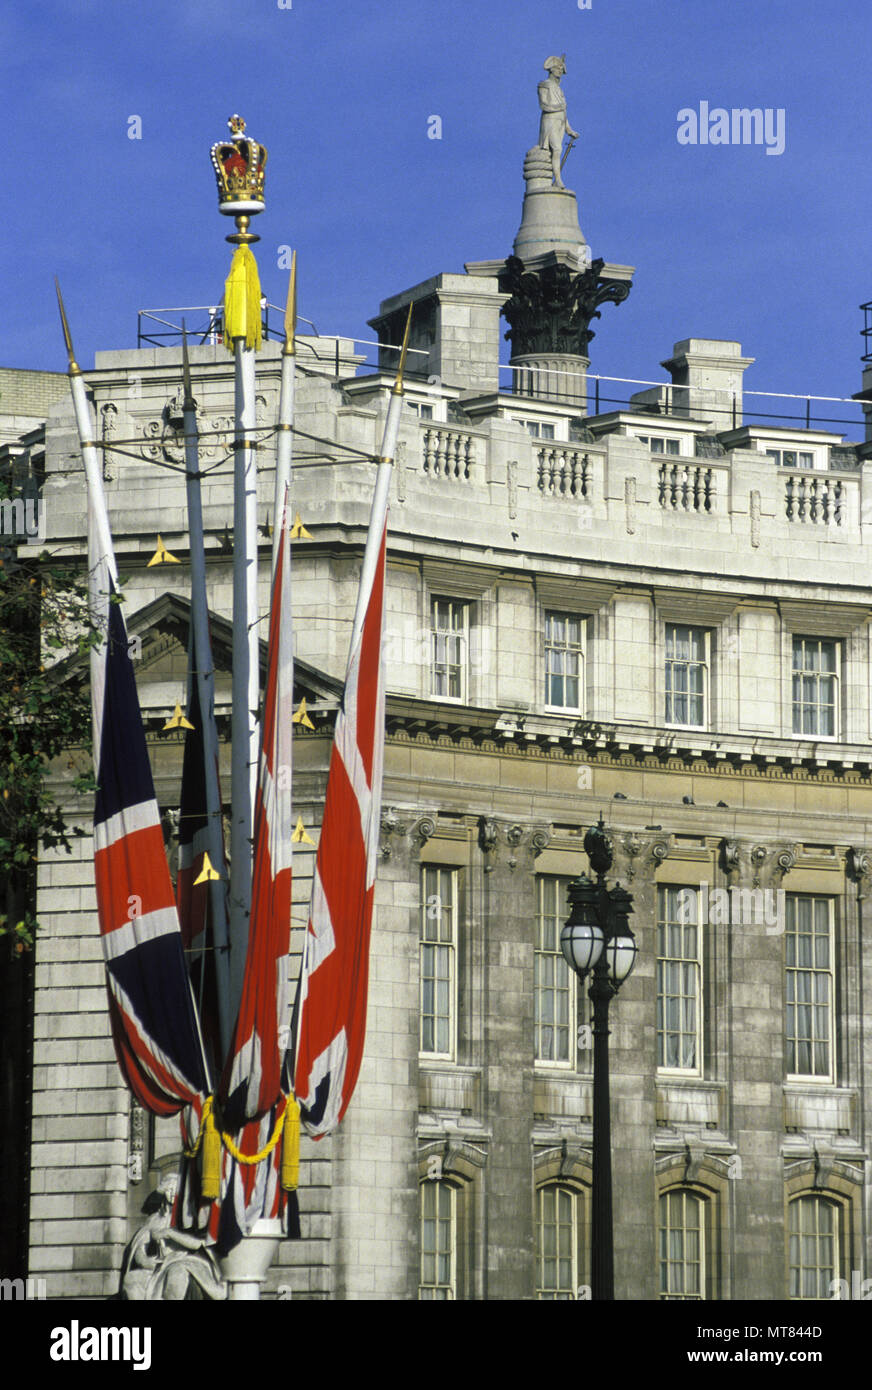 1988 historischen britischen Flaggen FAHNENMAST ADMIRALTY ARCH Nelson's Column London England Großbritannien Stockfoto